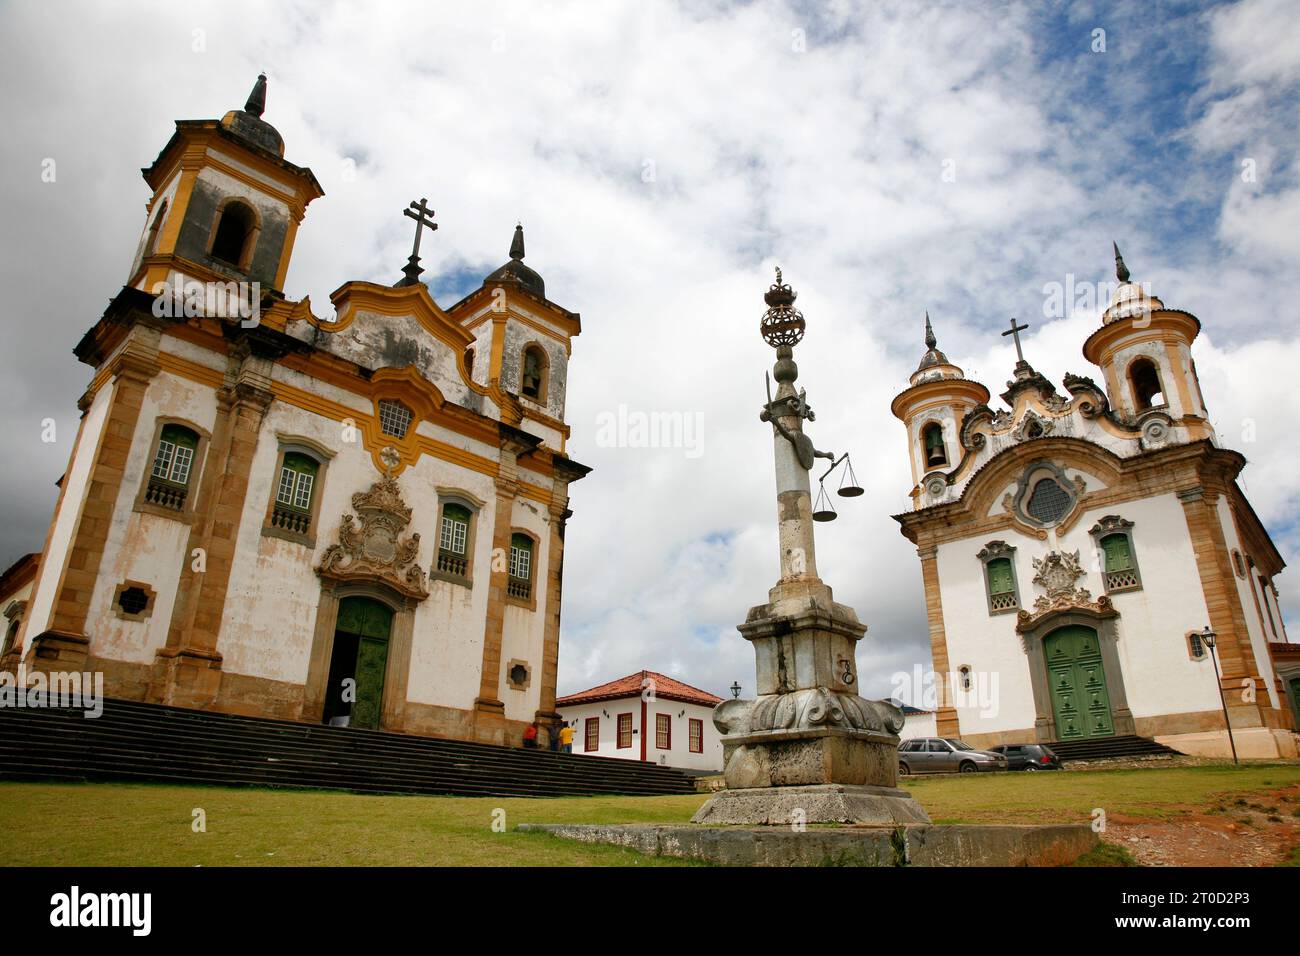 Sao Francisco de Assis and Nossa Senhora do Carmo churches at Praca Minas Gerais, Mariana, Minas Gerais, Brazil. Stock Photo